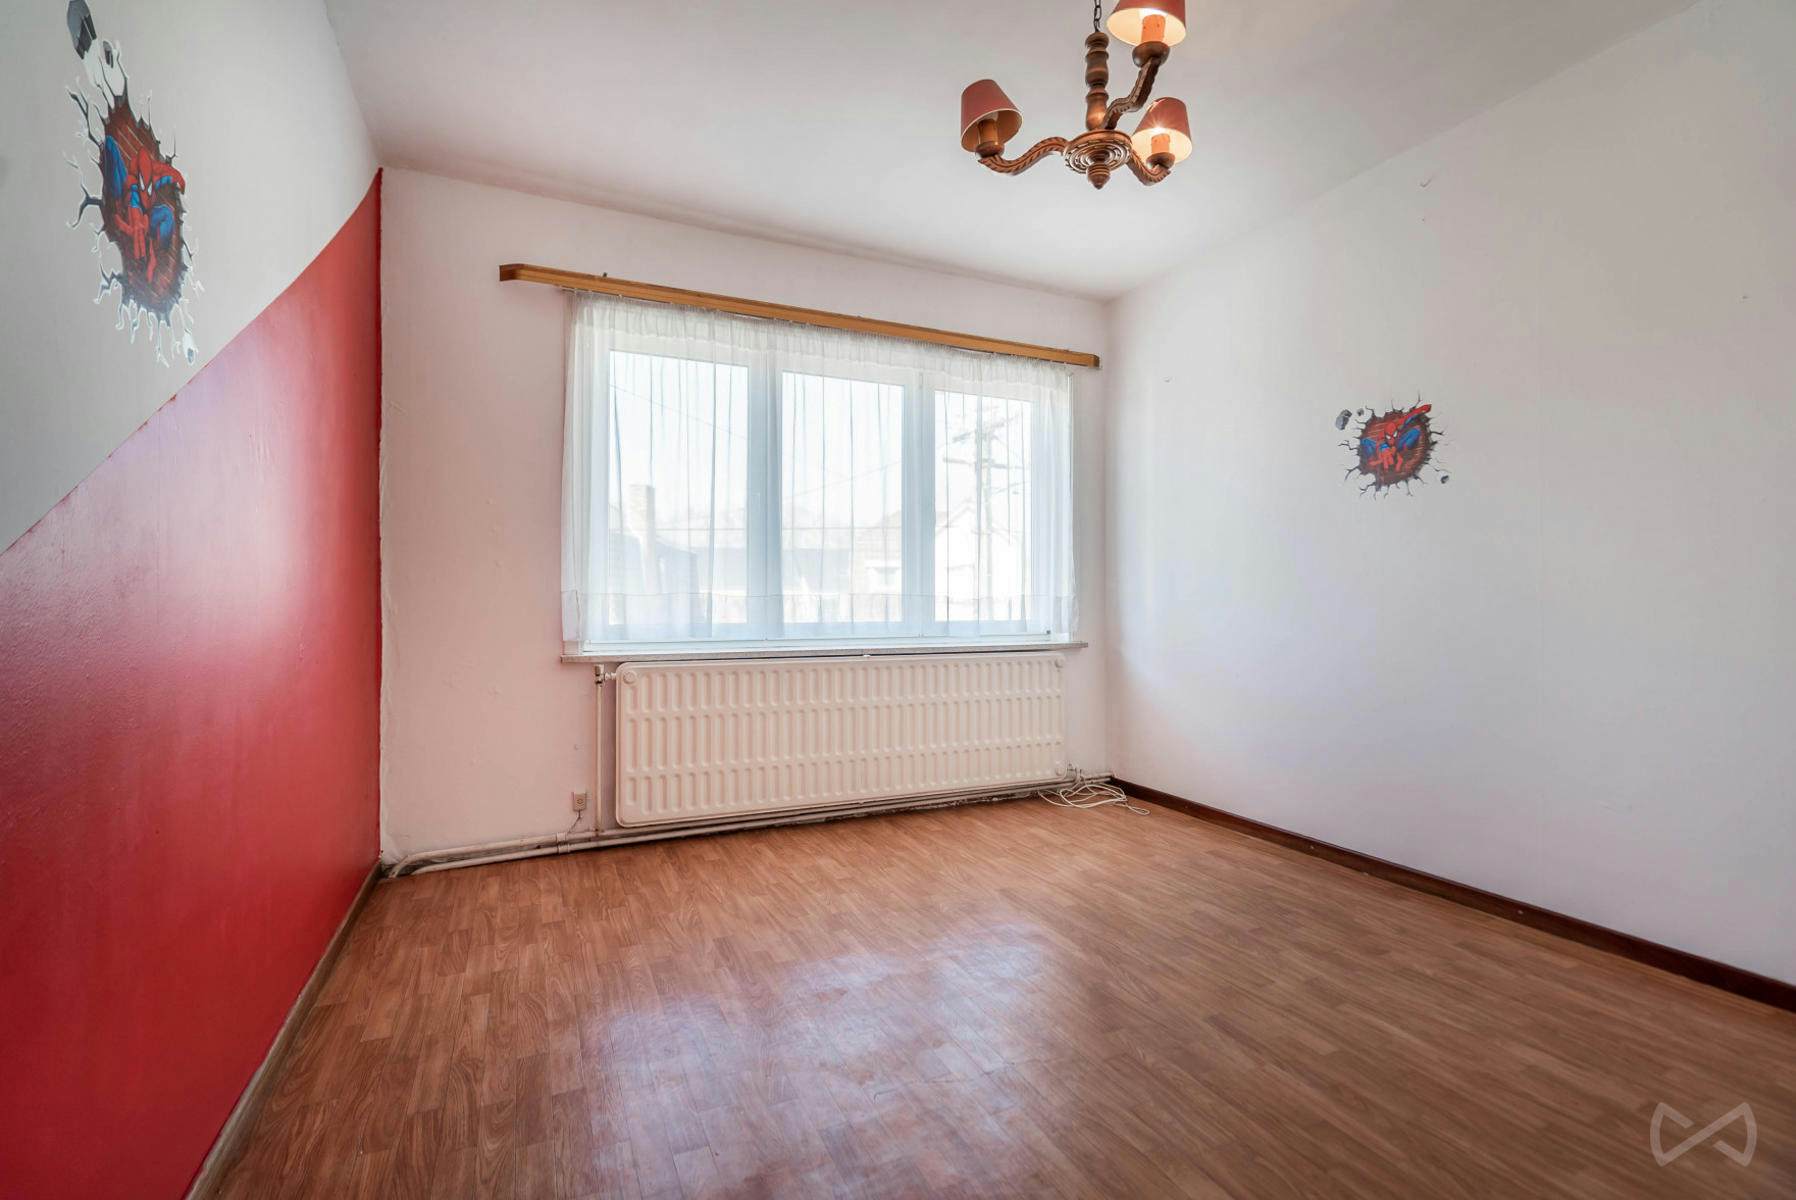 Foto 4 van 4 van Bel-etage met drie slaapkamers in Enghien